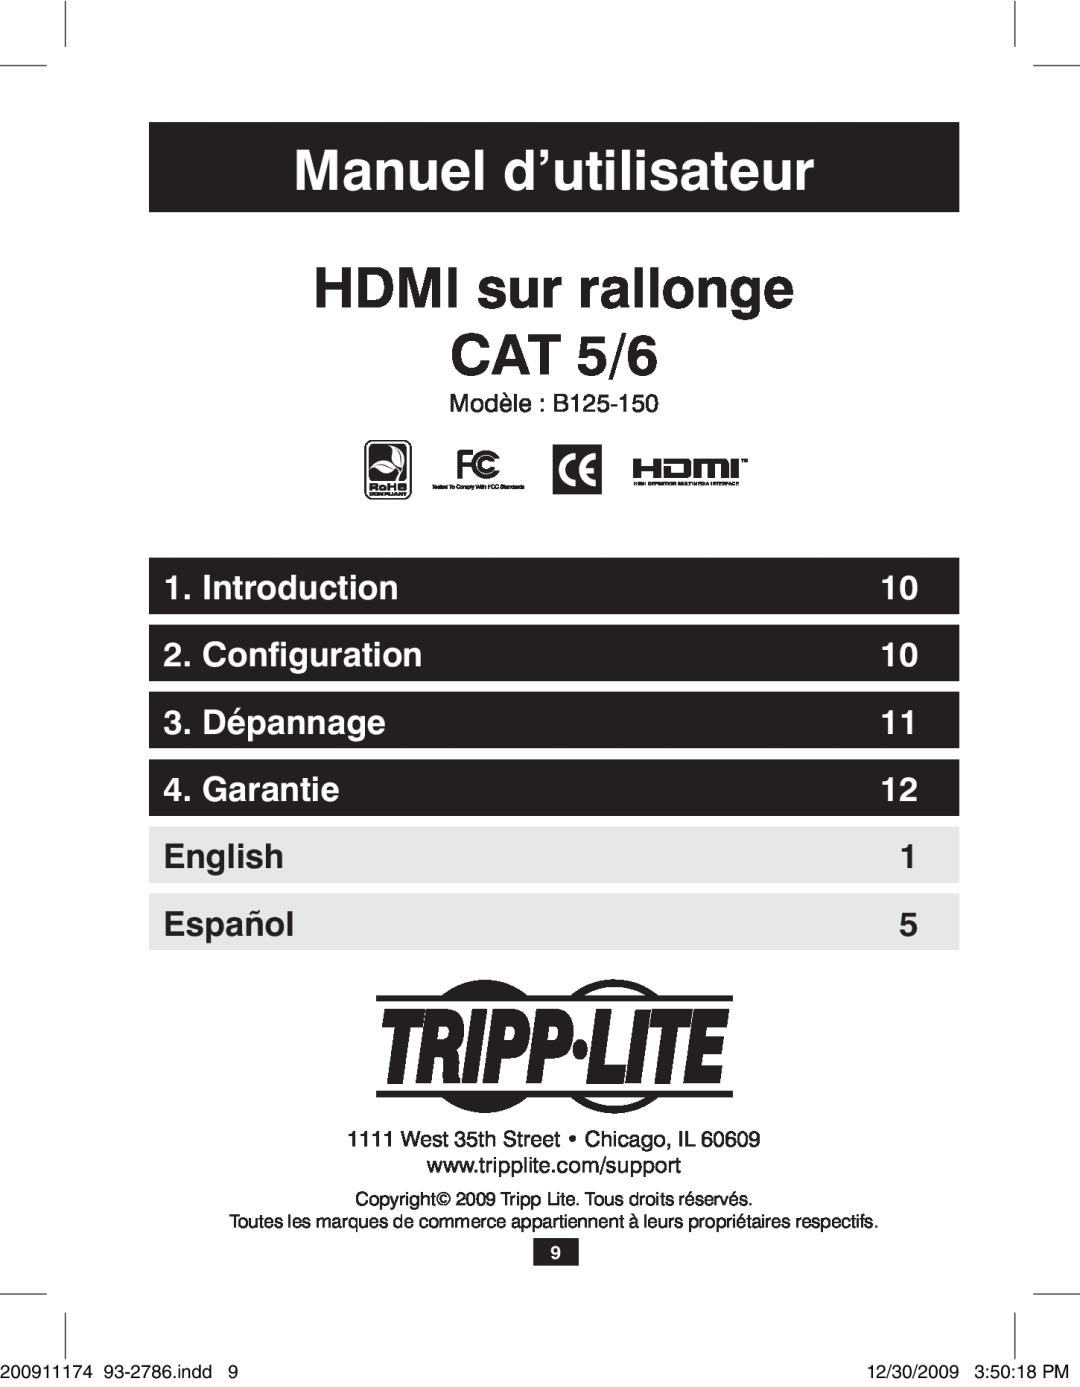 Tripp Lite B125-150 Manuel d’utilisateur, HDMI sur rallonge CAT 5/6, Configuration, Dépannage, Garantie, Introduction 